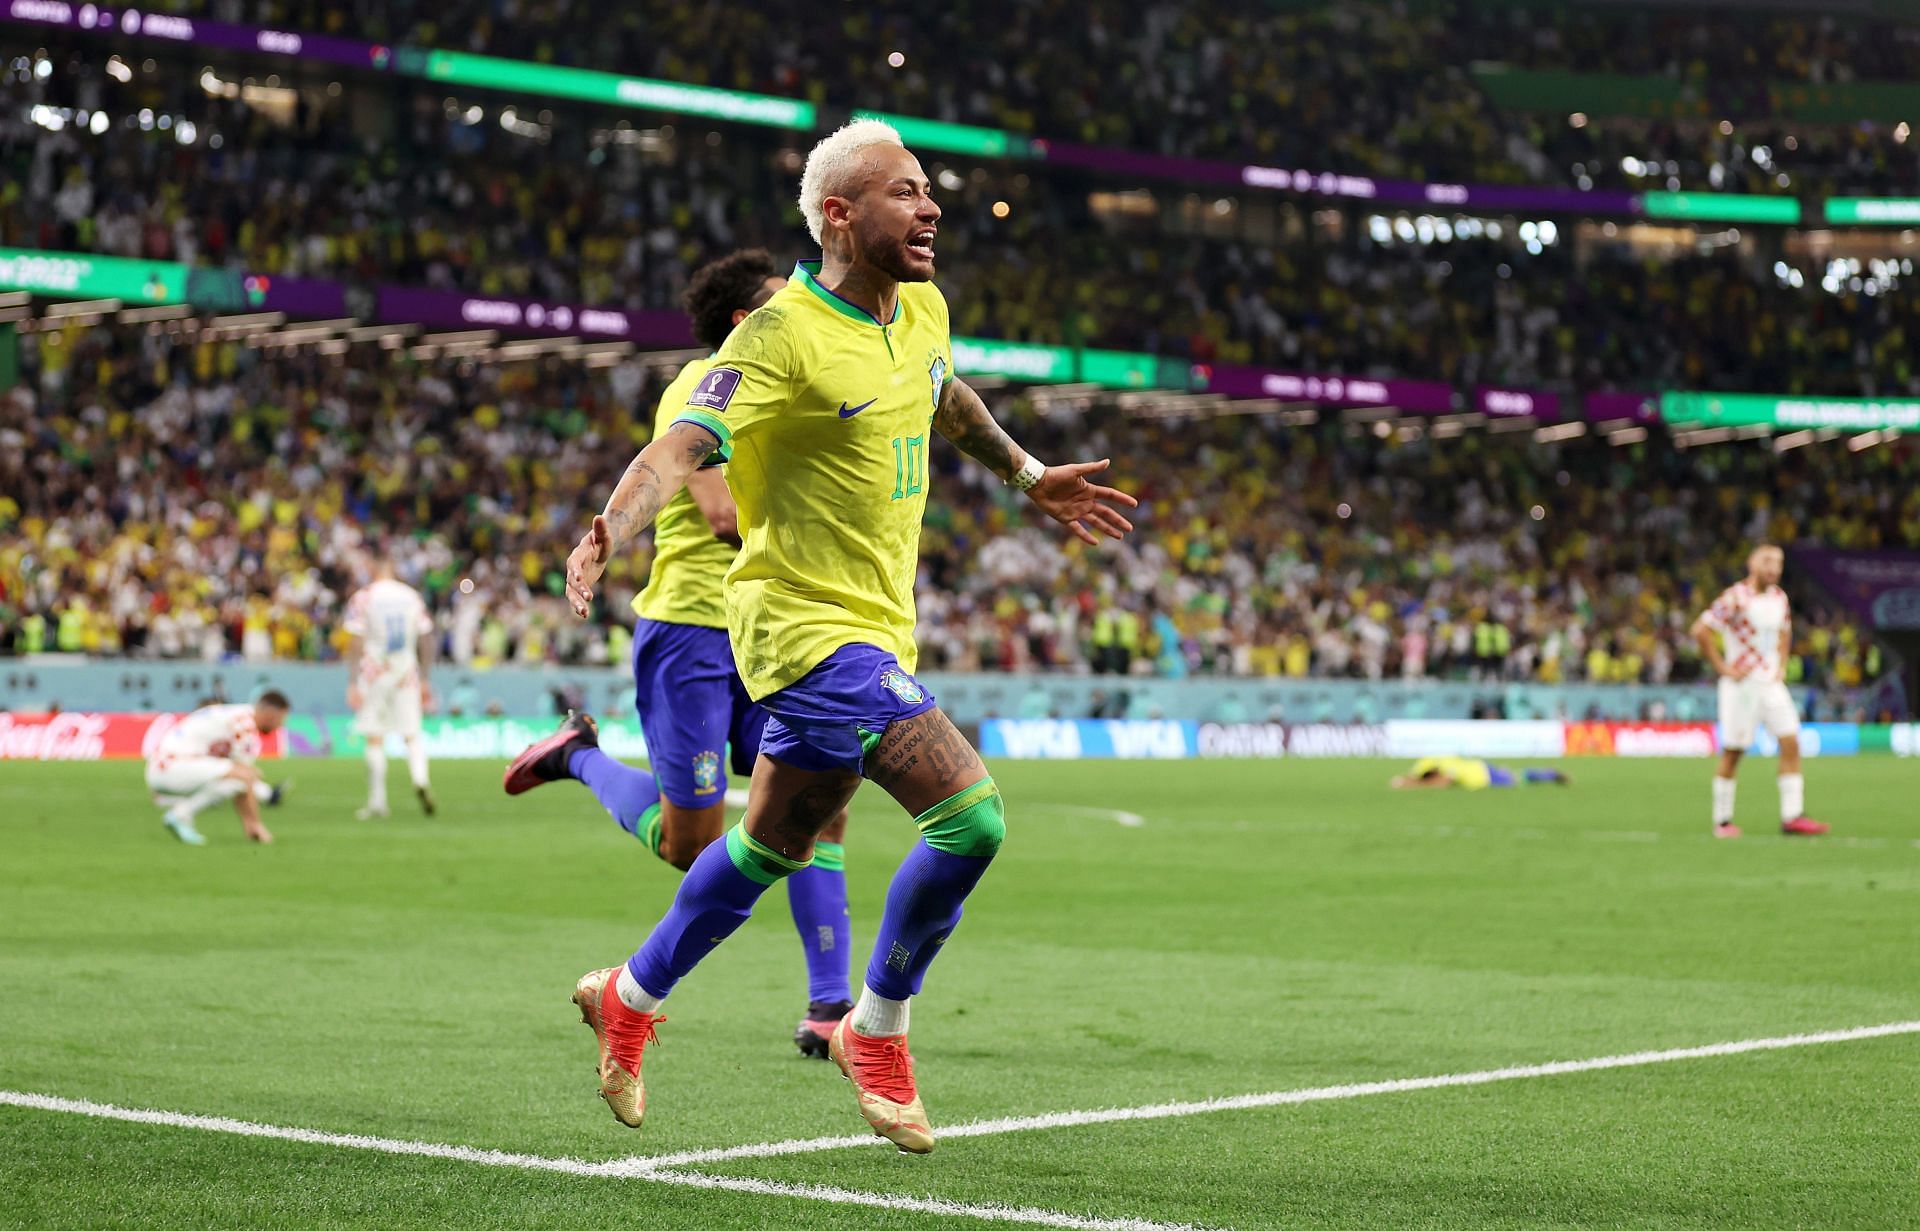 Neymar celebrates after scoring a worldie.